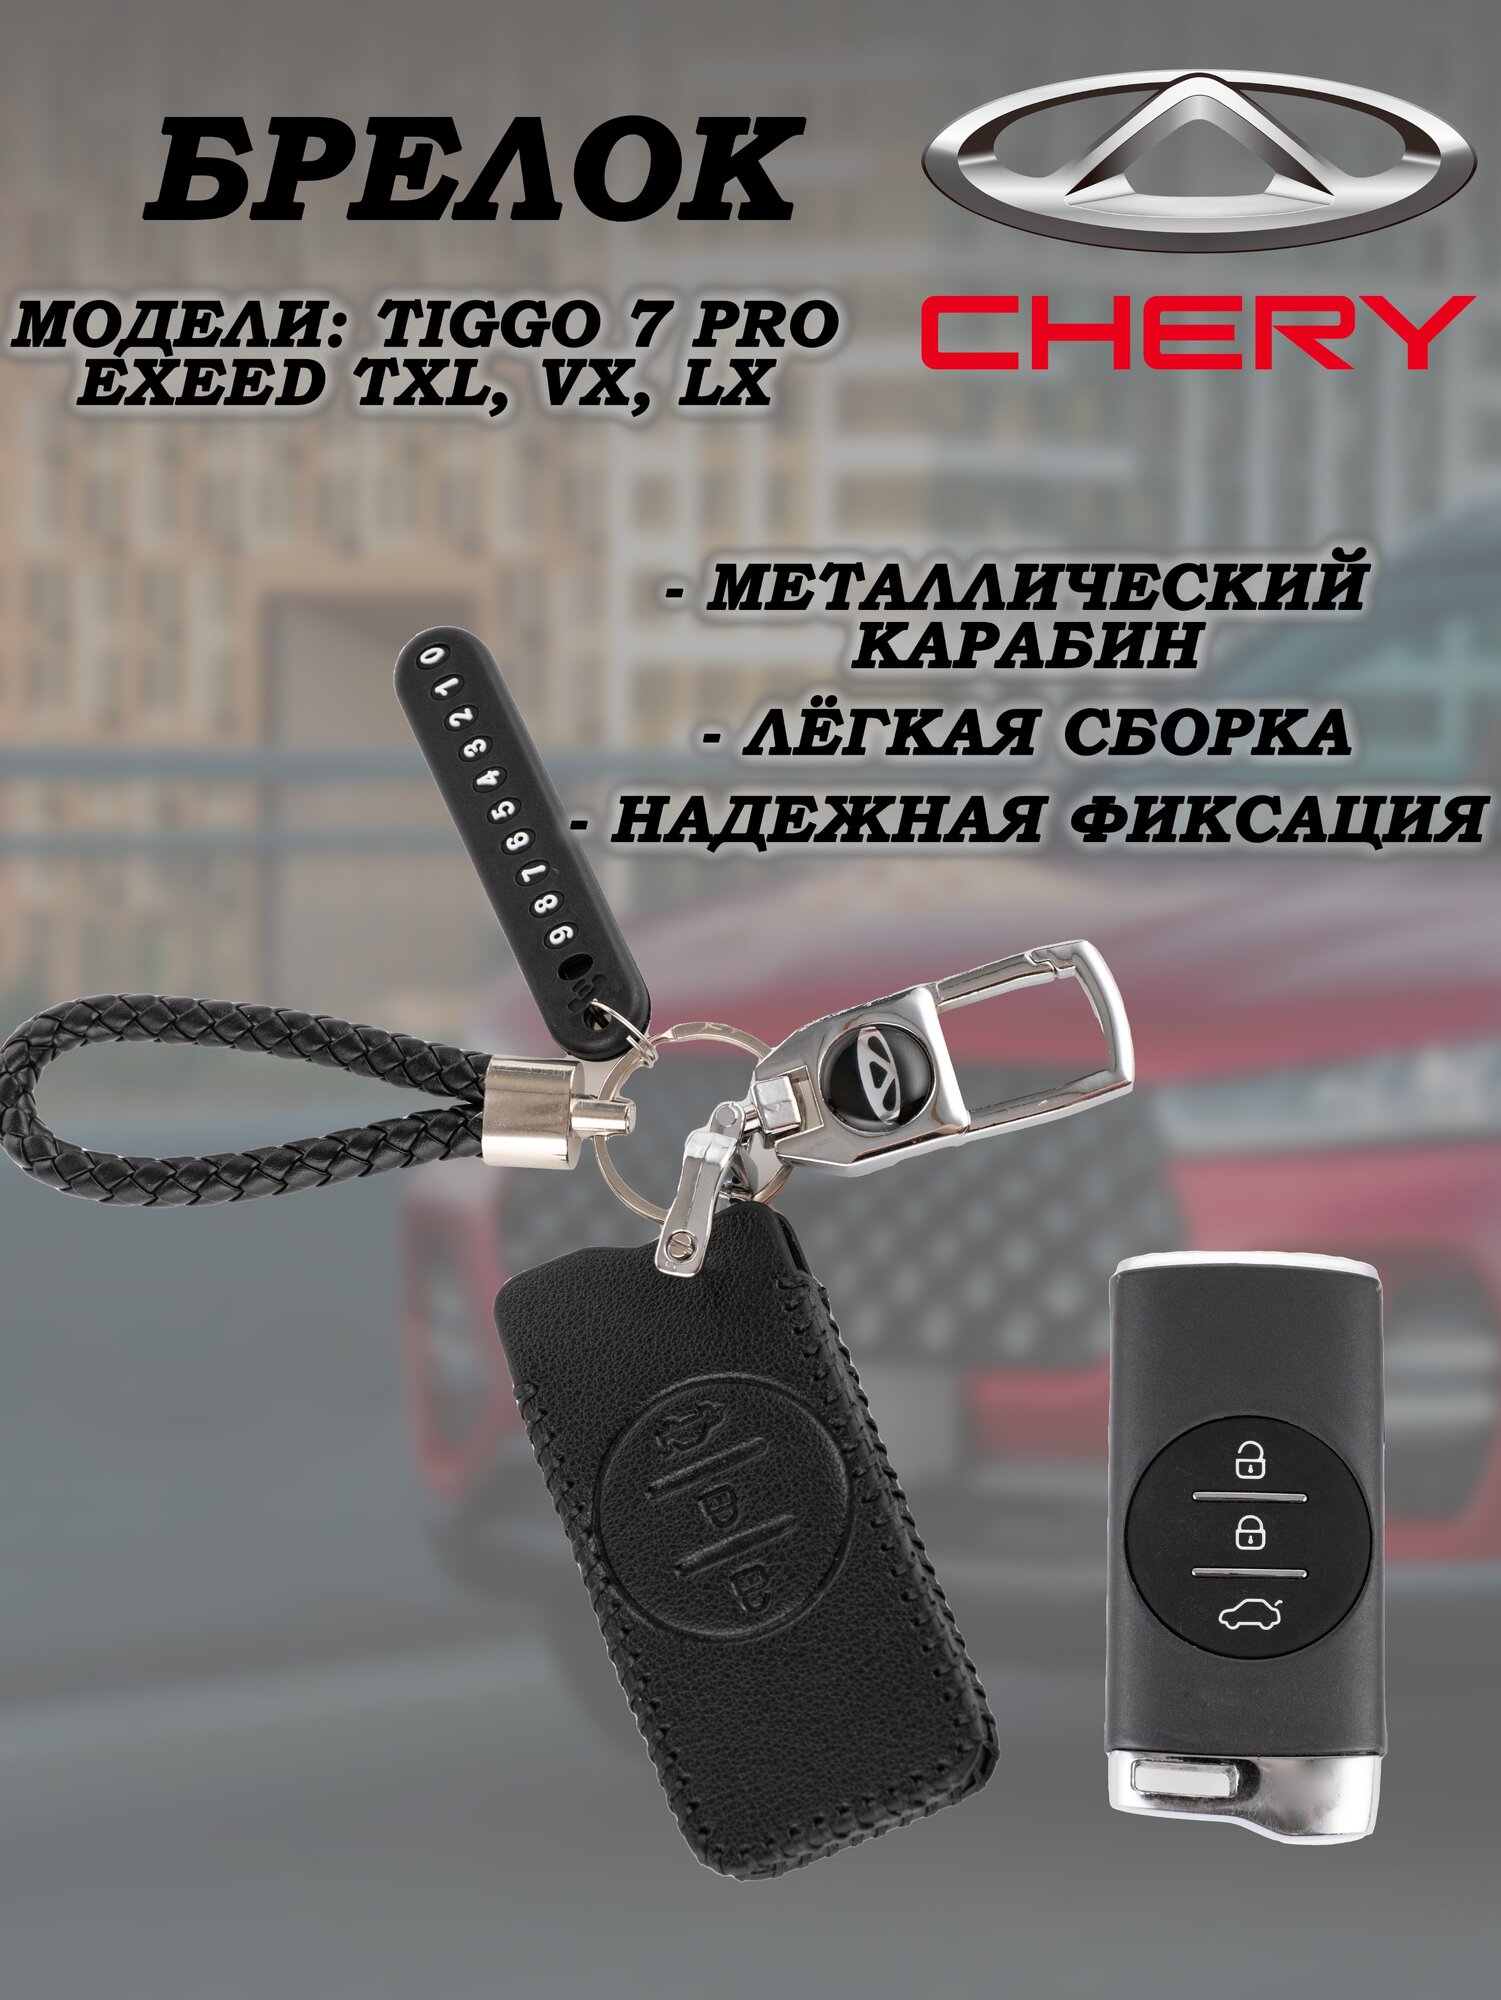 Брелок для ключей Chery Tiggo, Exeed TXL VX LX черри тиго 7 PRO